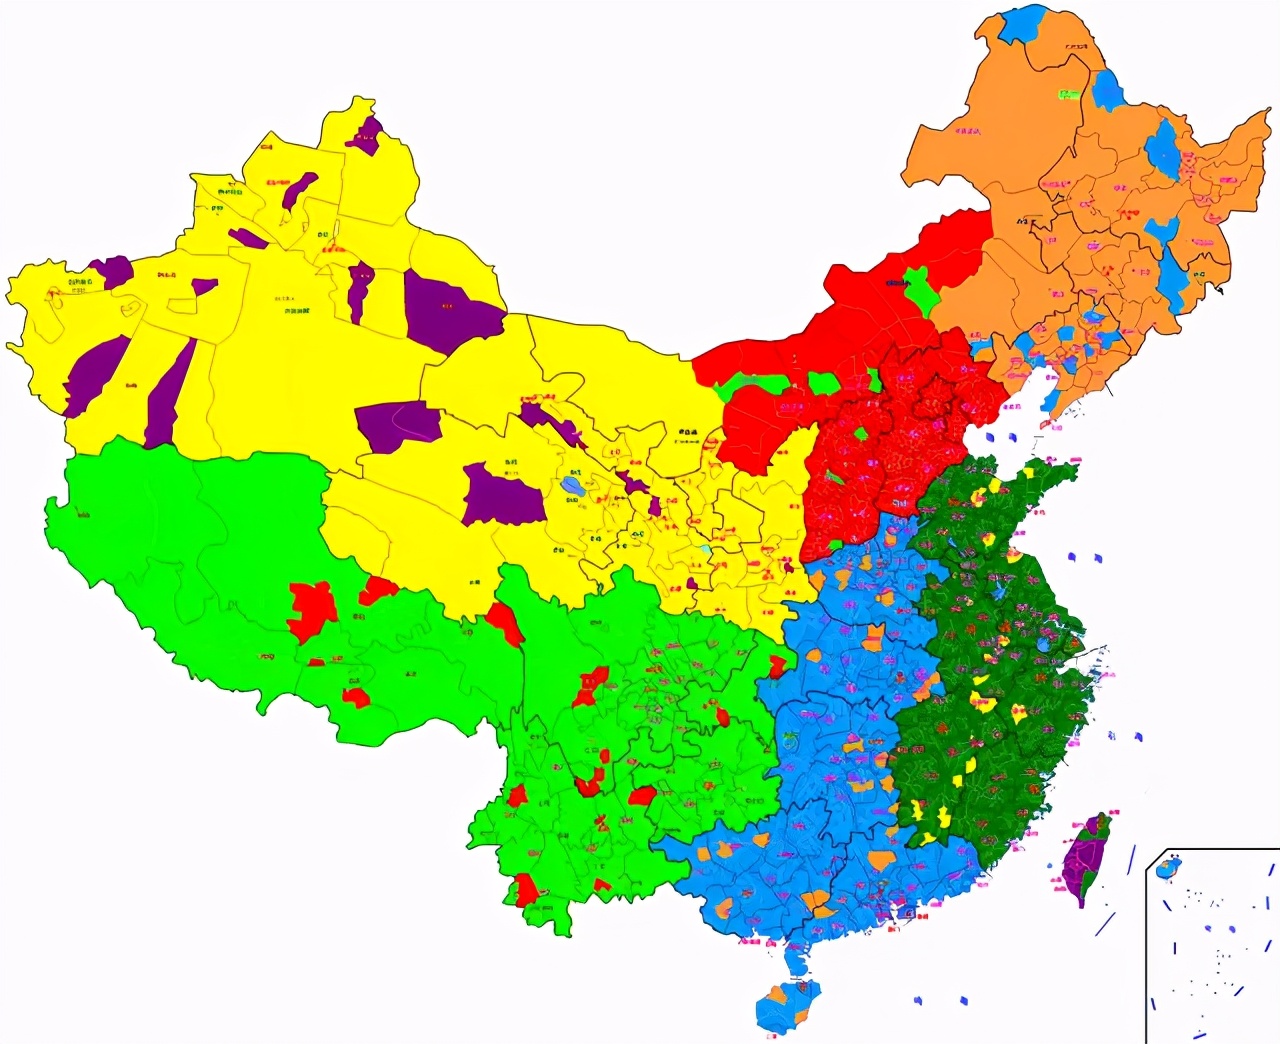 中国矿产资源分布图高清版大图（中国各地矿产分布图及名称）